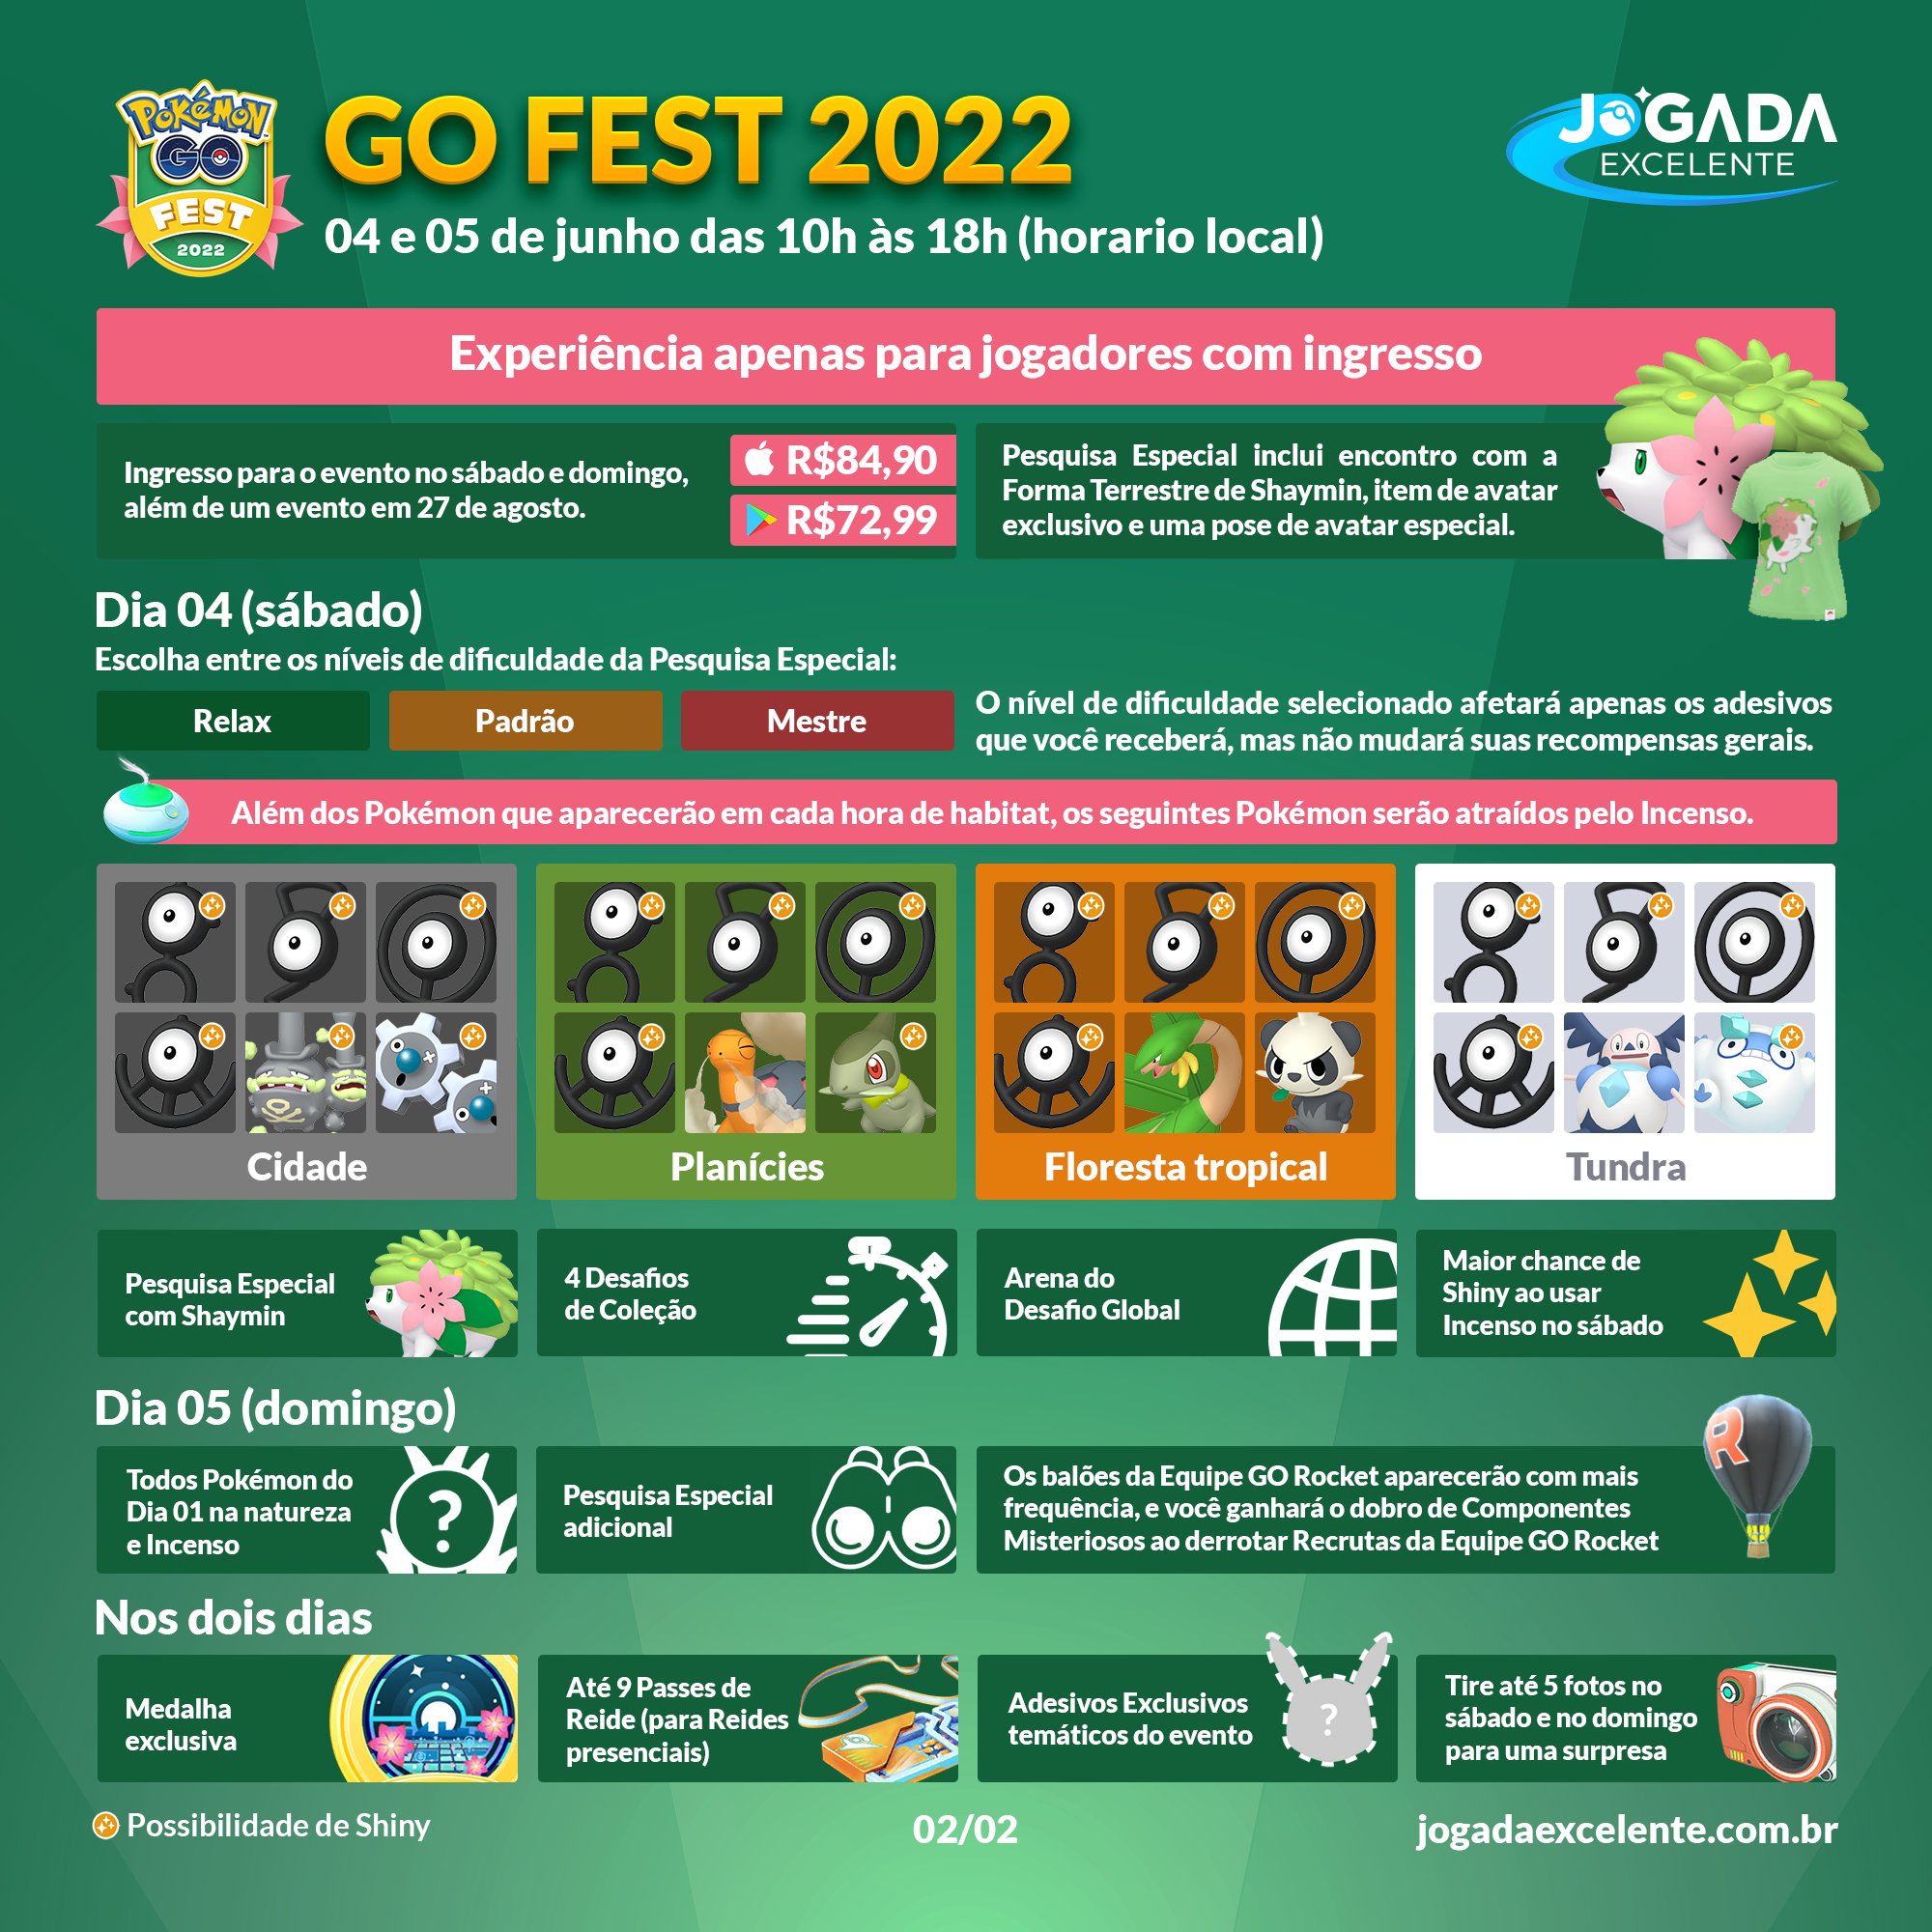 Pokémon GO Fest Sapporo 2022 - Jogada Excelente